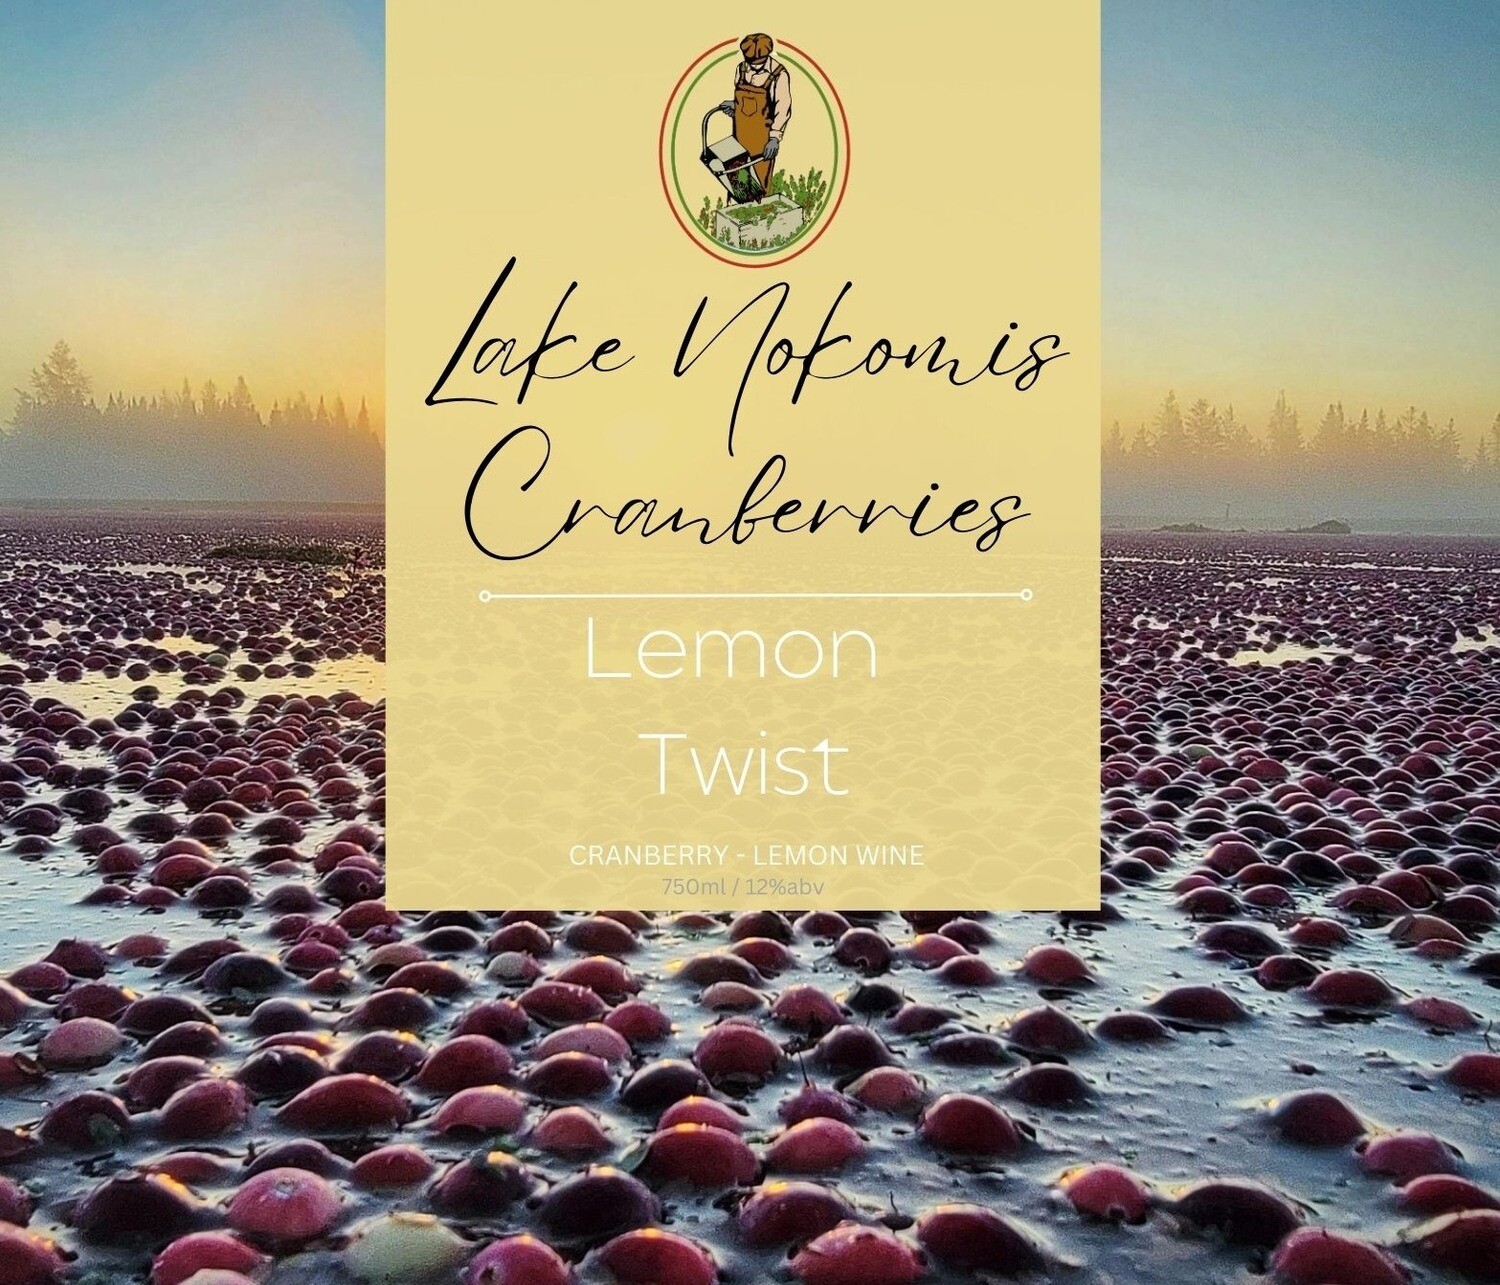 Lemon Twist wine